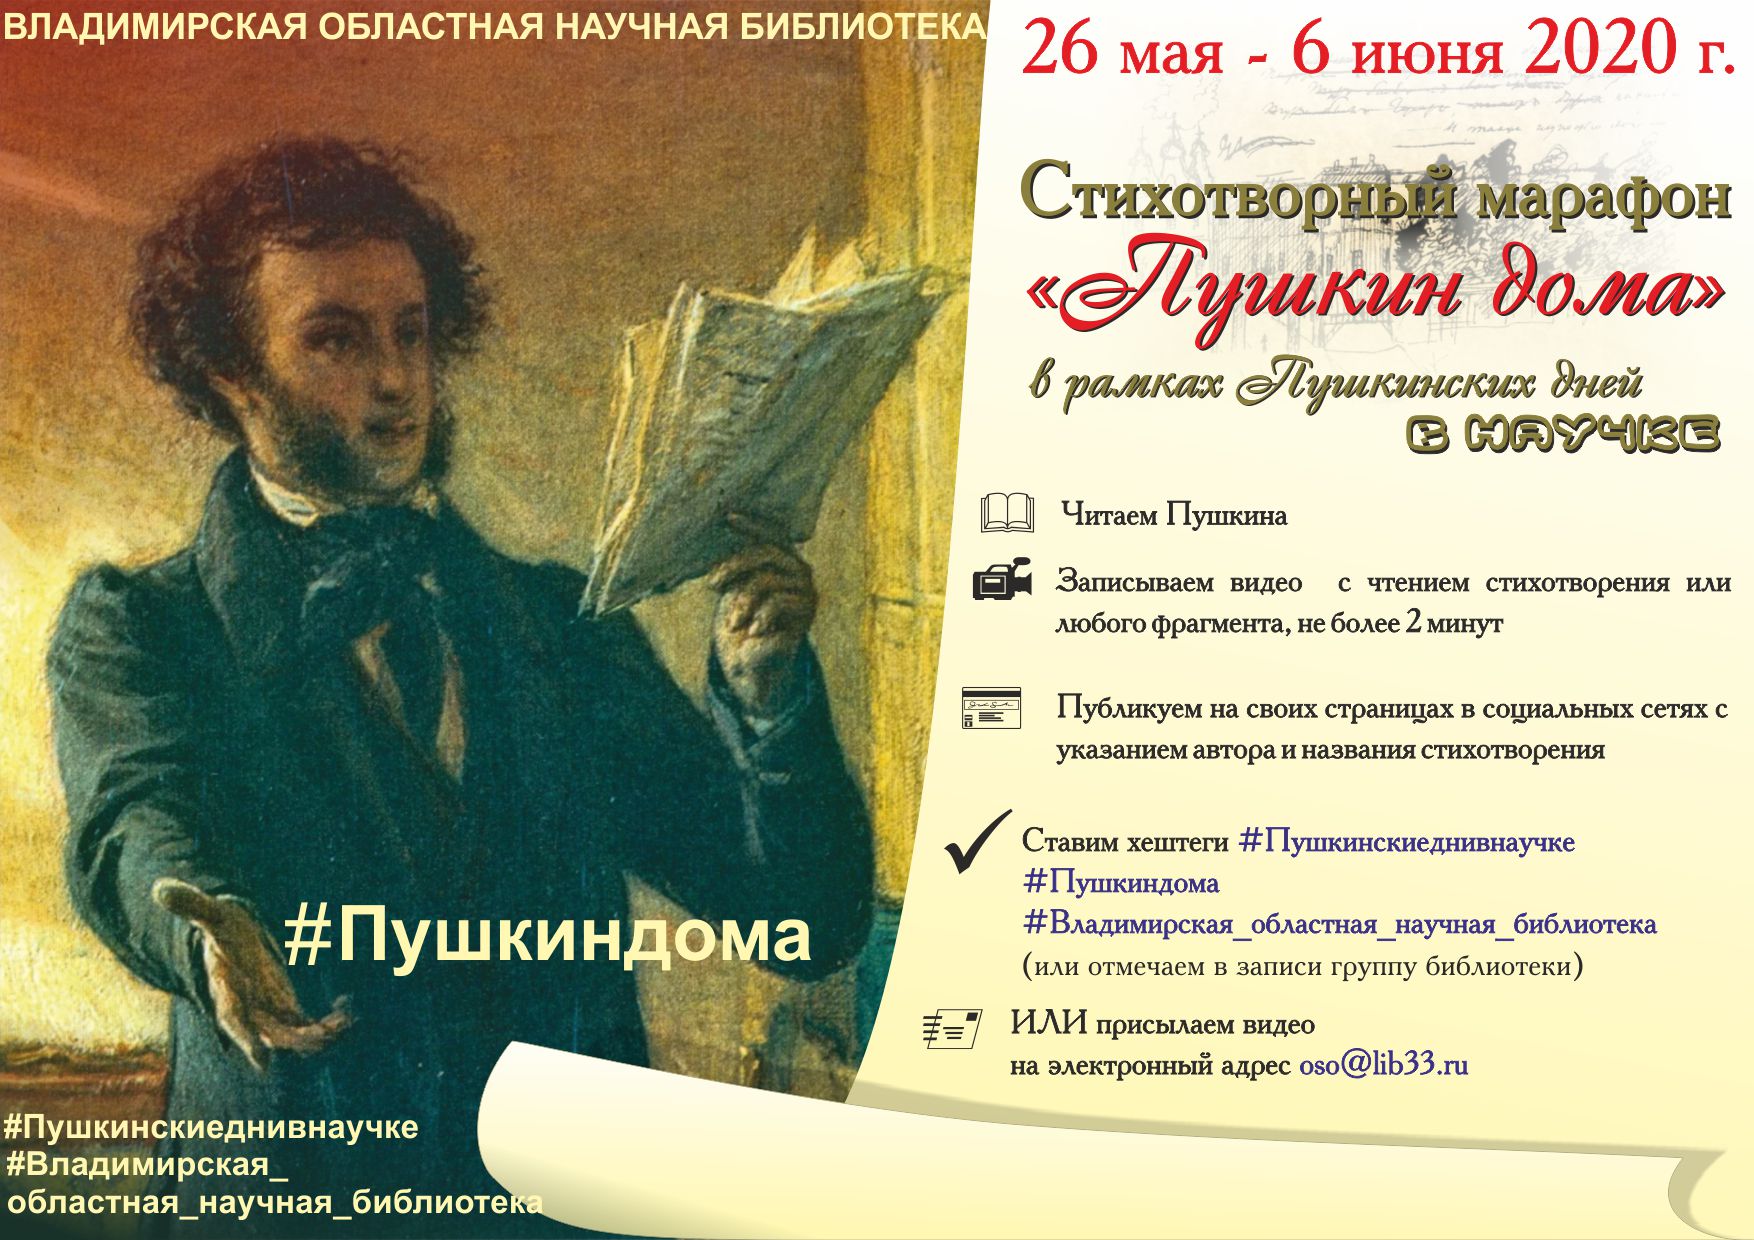 Стихотворный марафон "Пушкин дома"